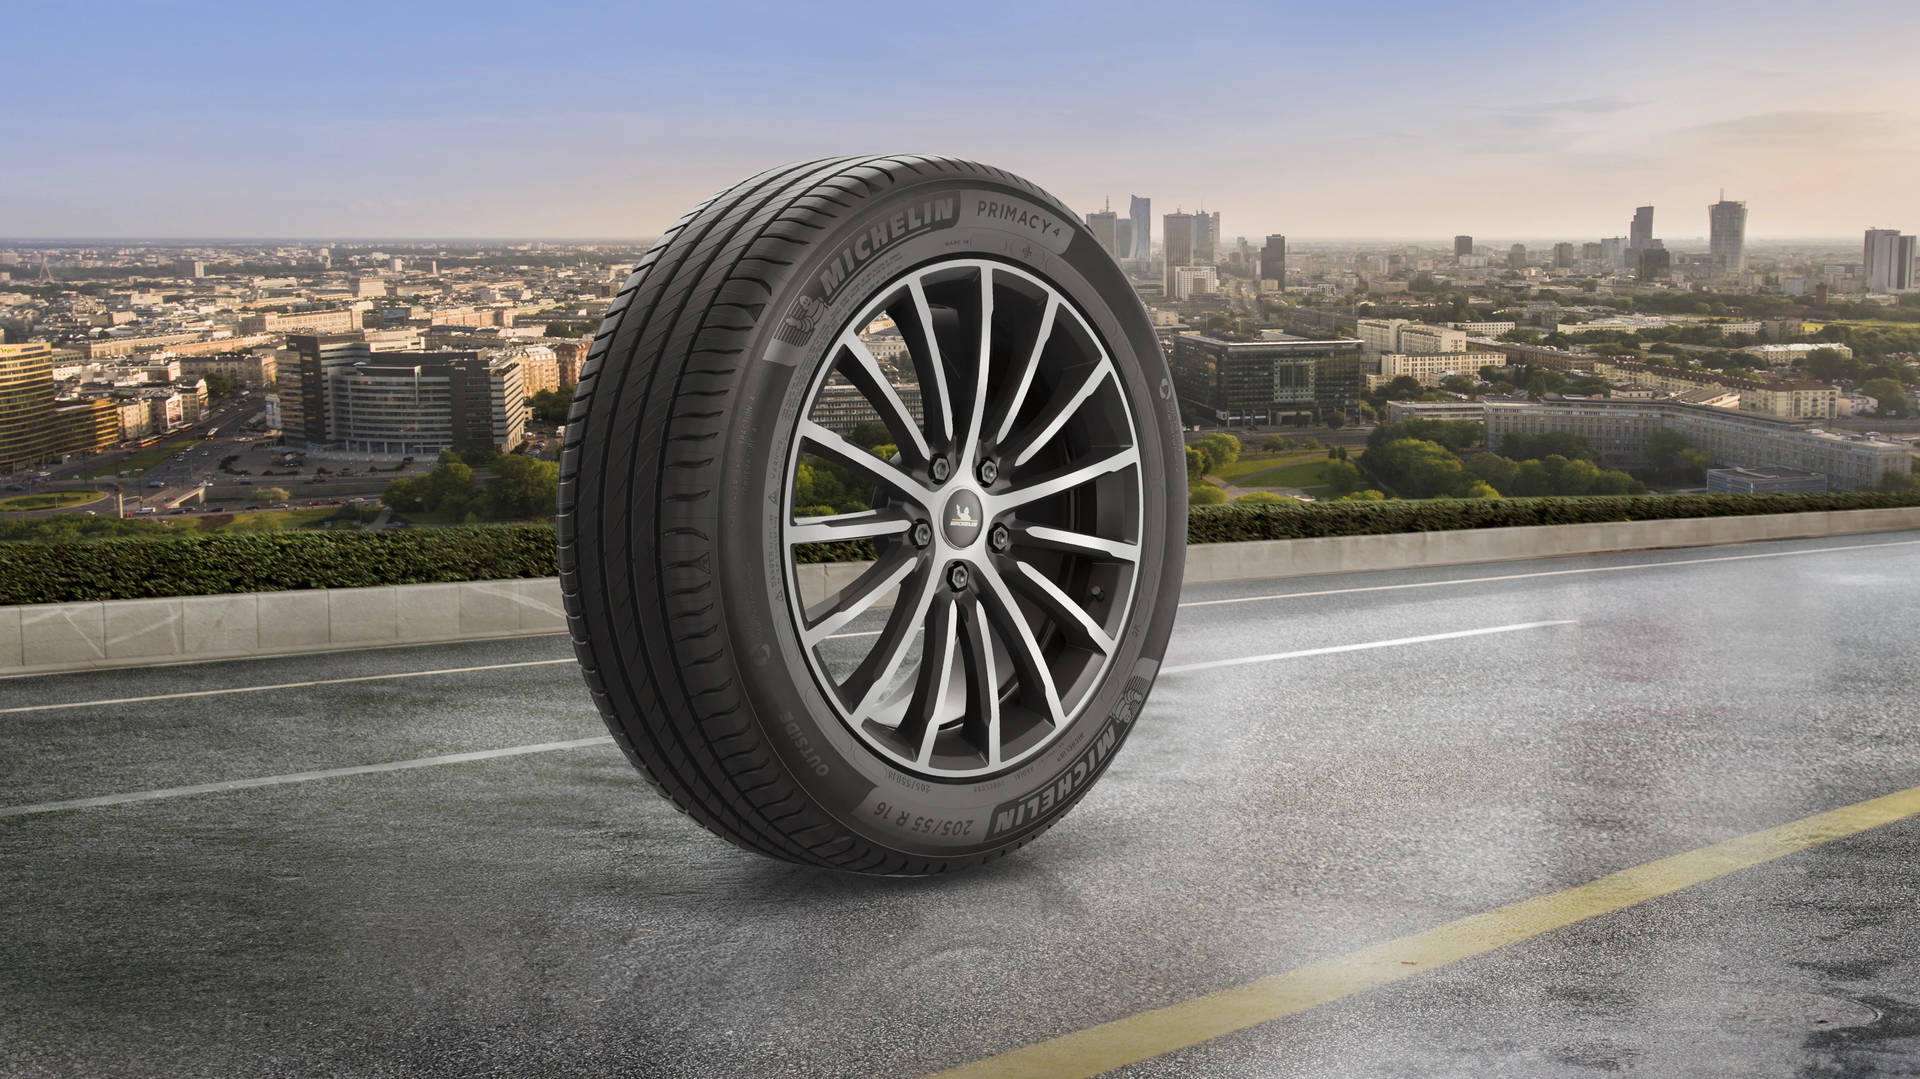 Michelin Premium Road Tire Wallpaper